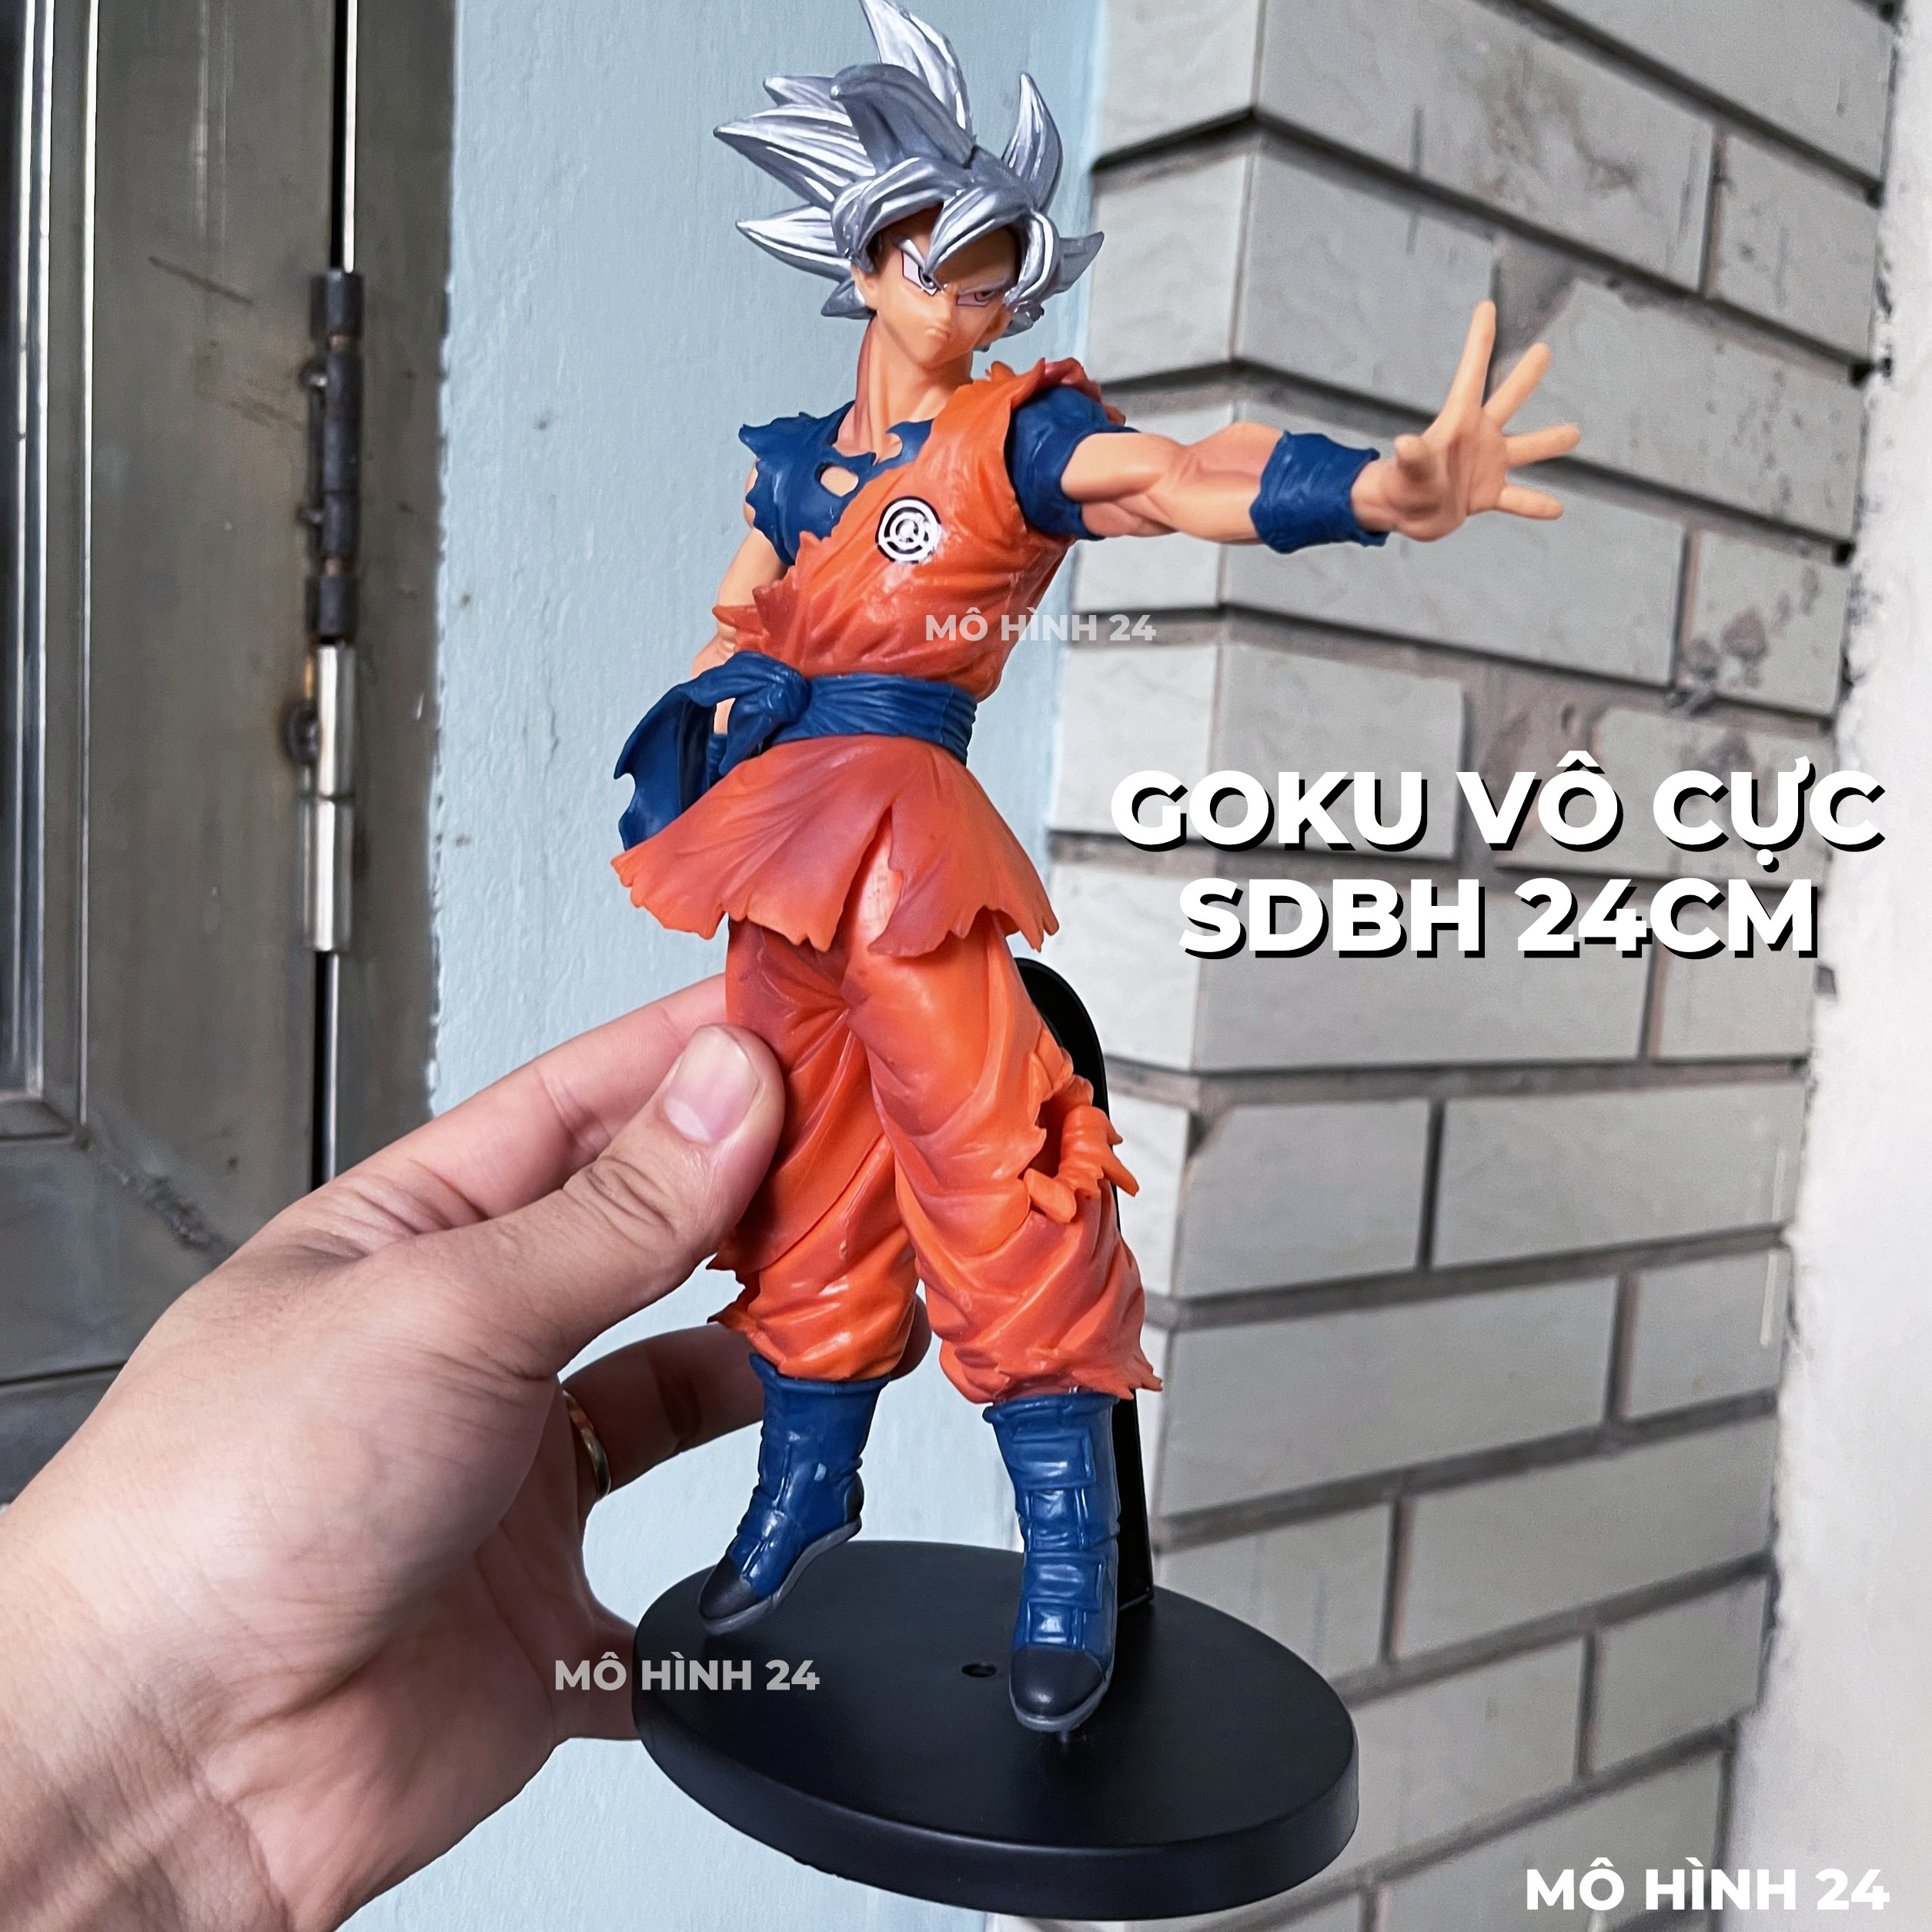 Tổng hợp hình nền Son Goku phân giải cao cho máy tính - QuanTriMang.com